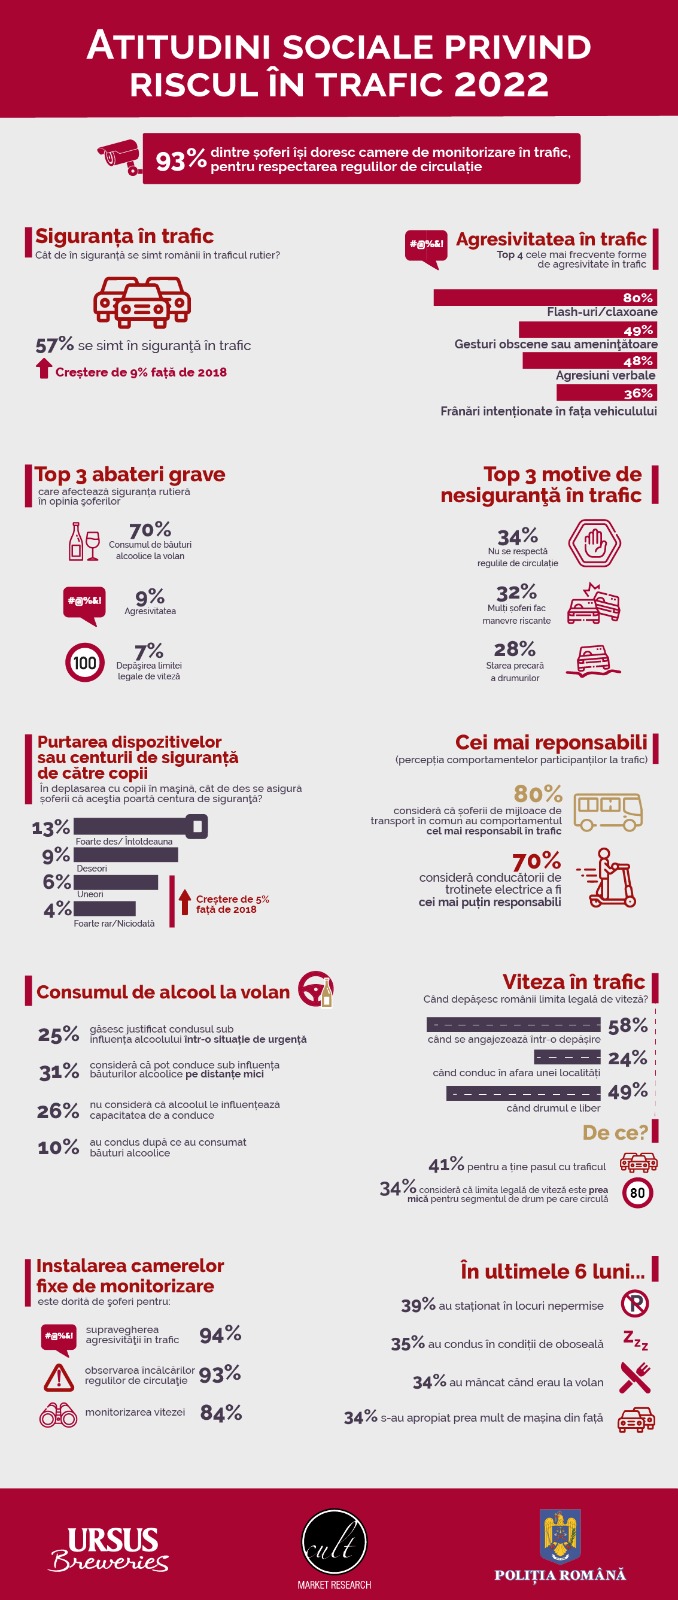 Infografic Studiu atitudini sociale risc in trafic 2022